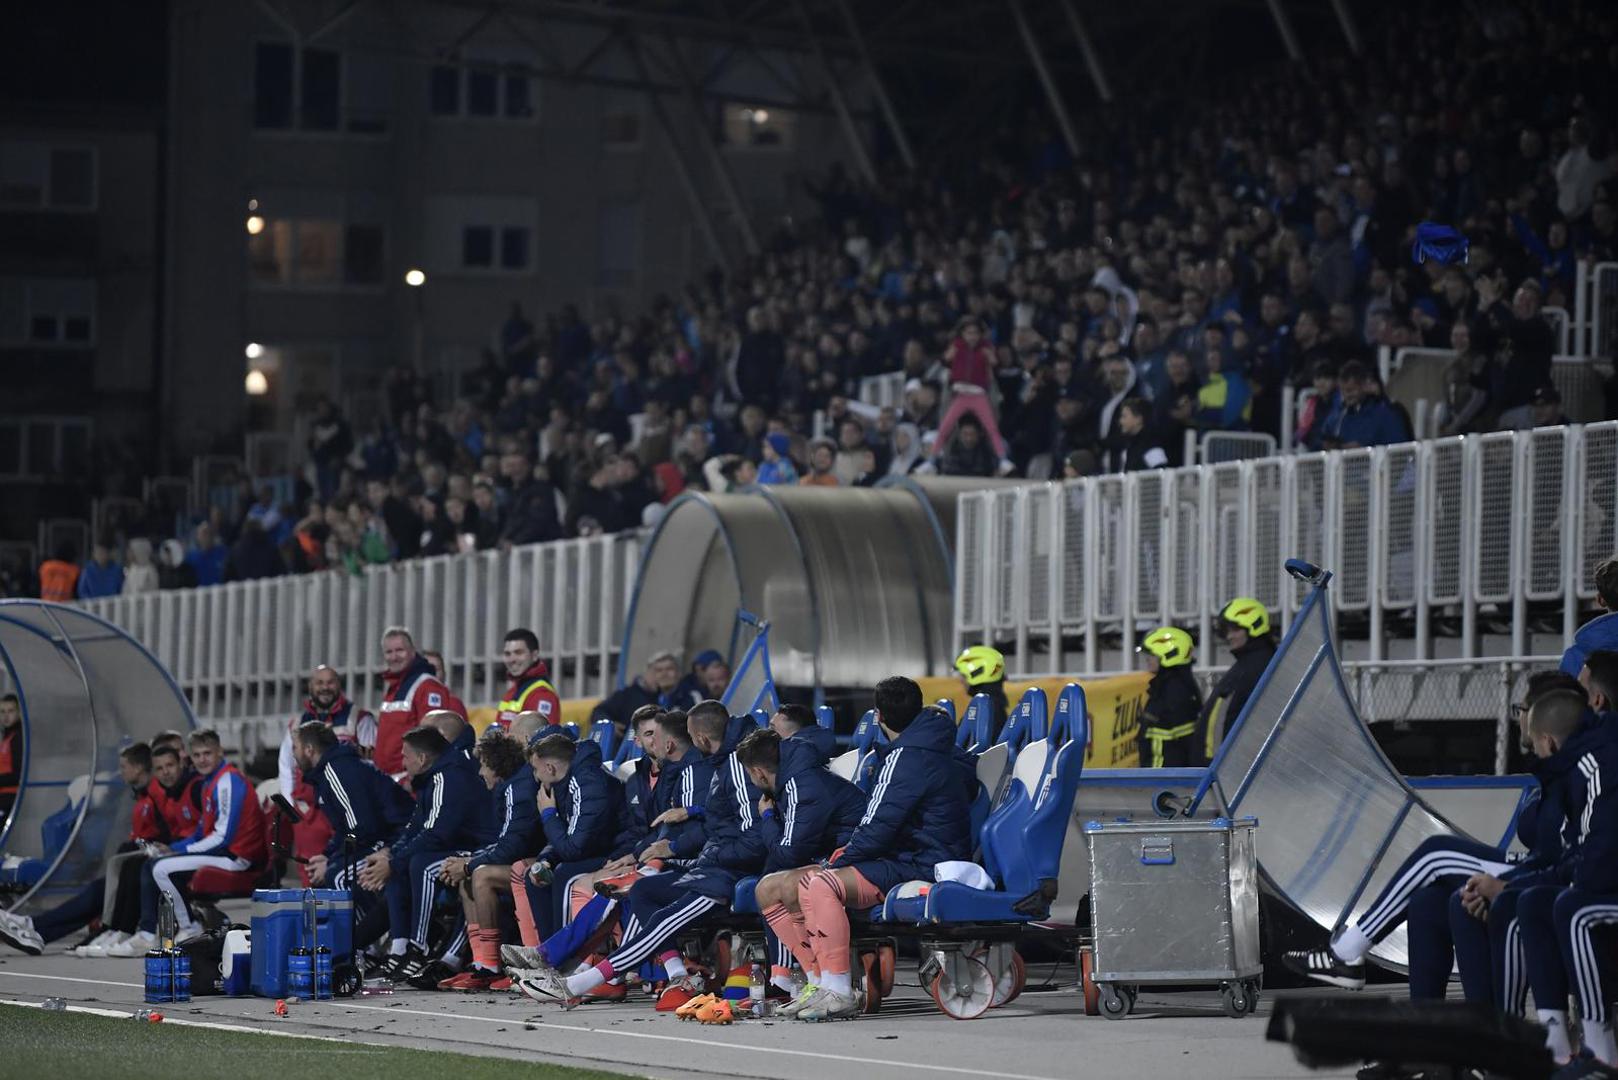 Vjetar otpuhao okvir Dinamove klupe na utakmici 9. kola HNL-a između Dinama i Rudeša. Dinamo je u tom trenutku već osigurao pobjedu s pet zabijenih golova, a dobro raspoloženi navijači ekipu s klupe pozdravili su skandiranjem